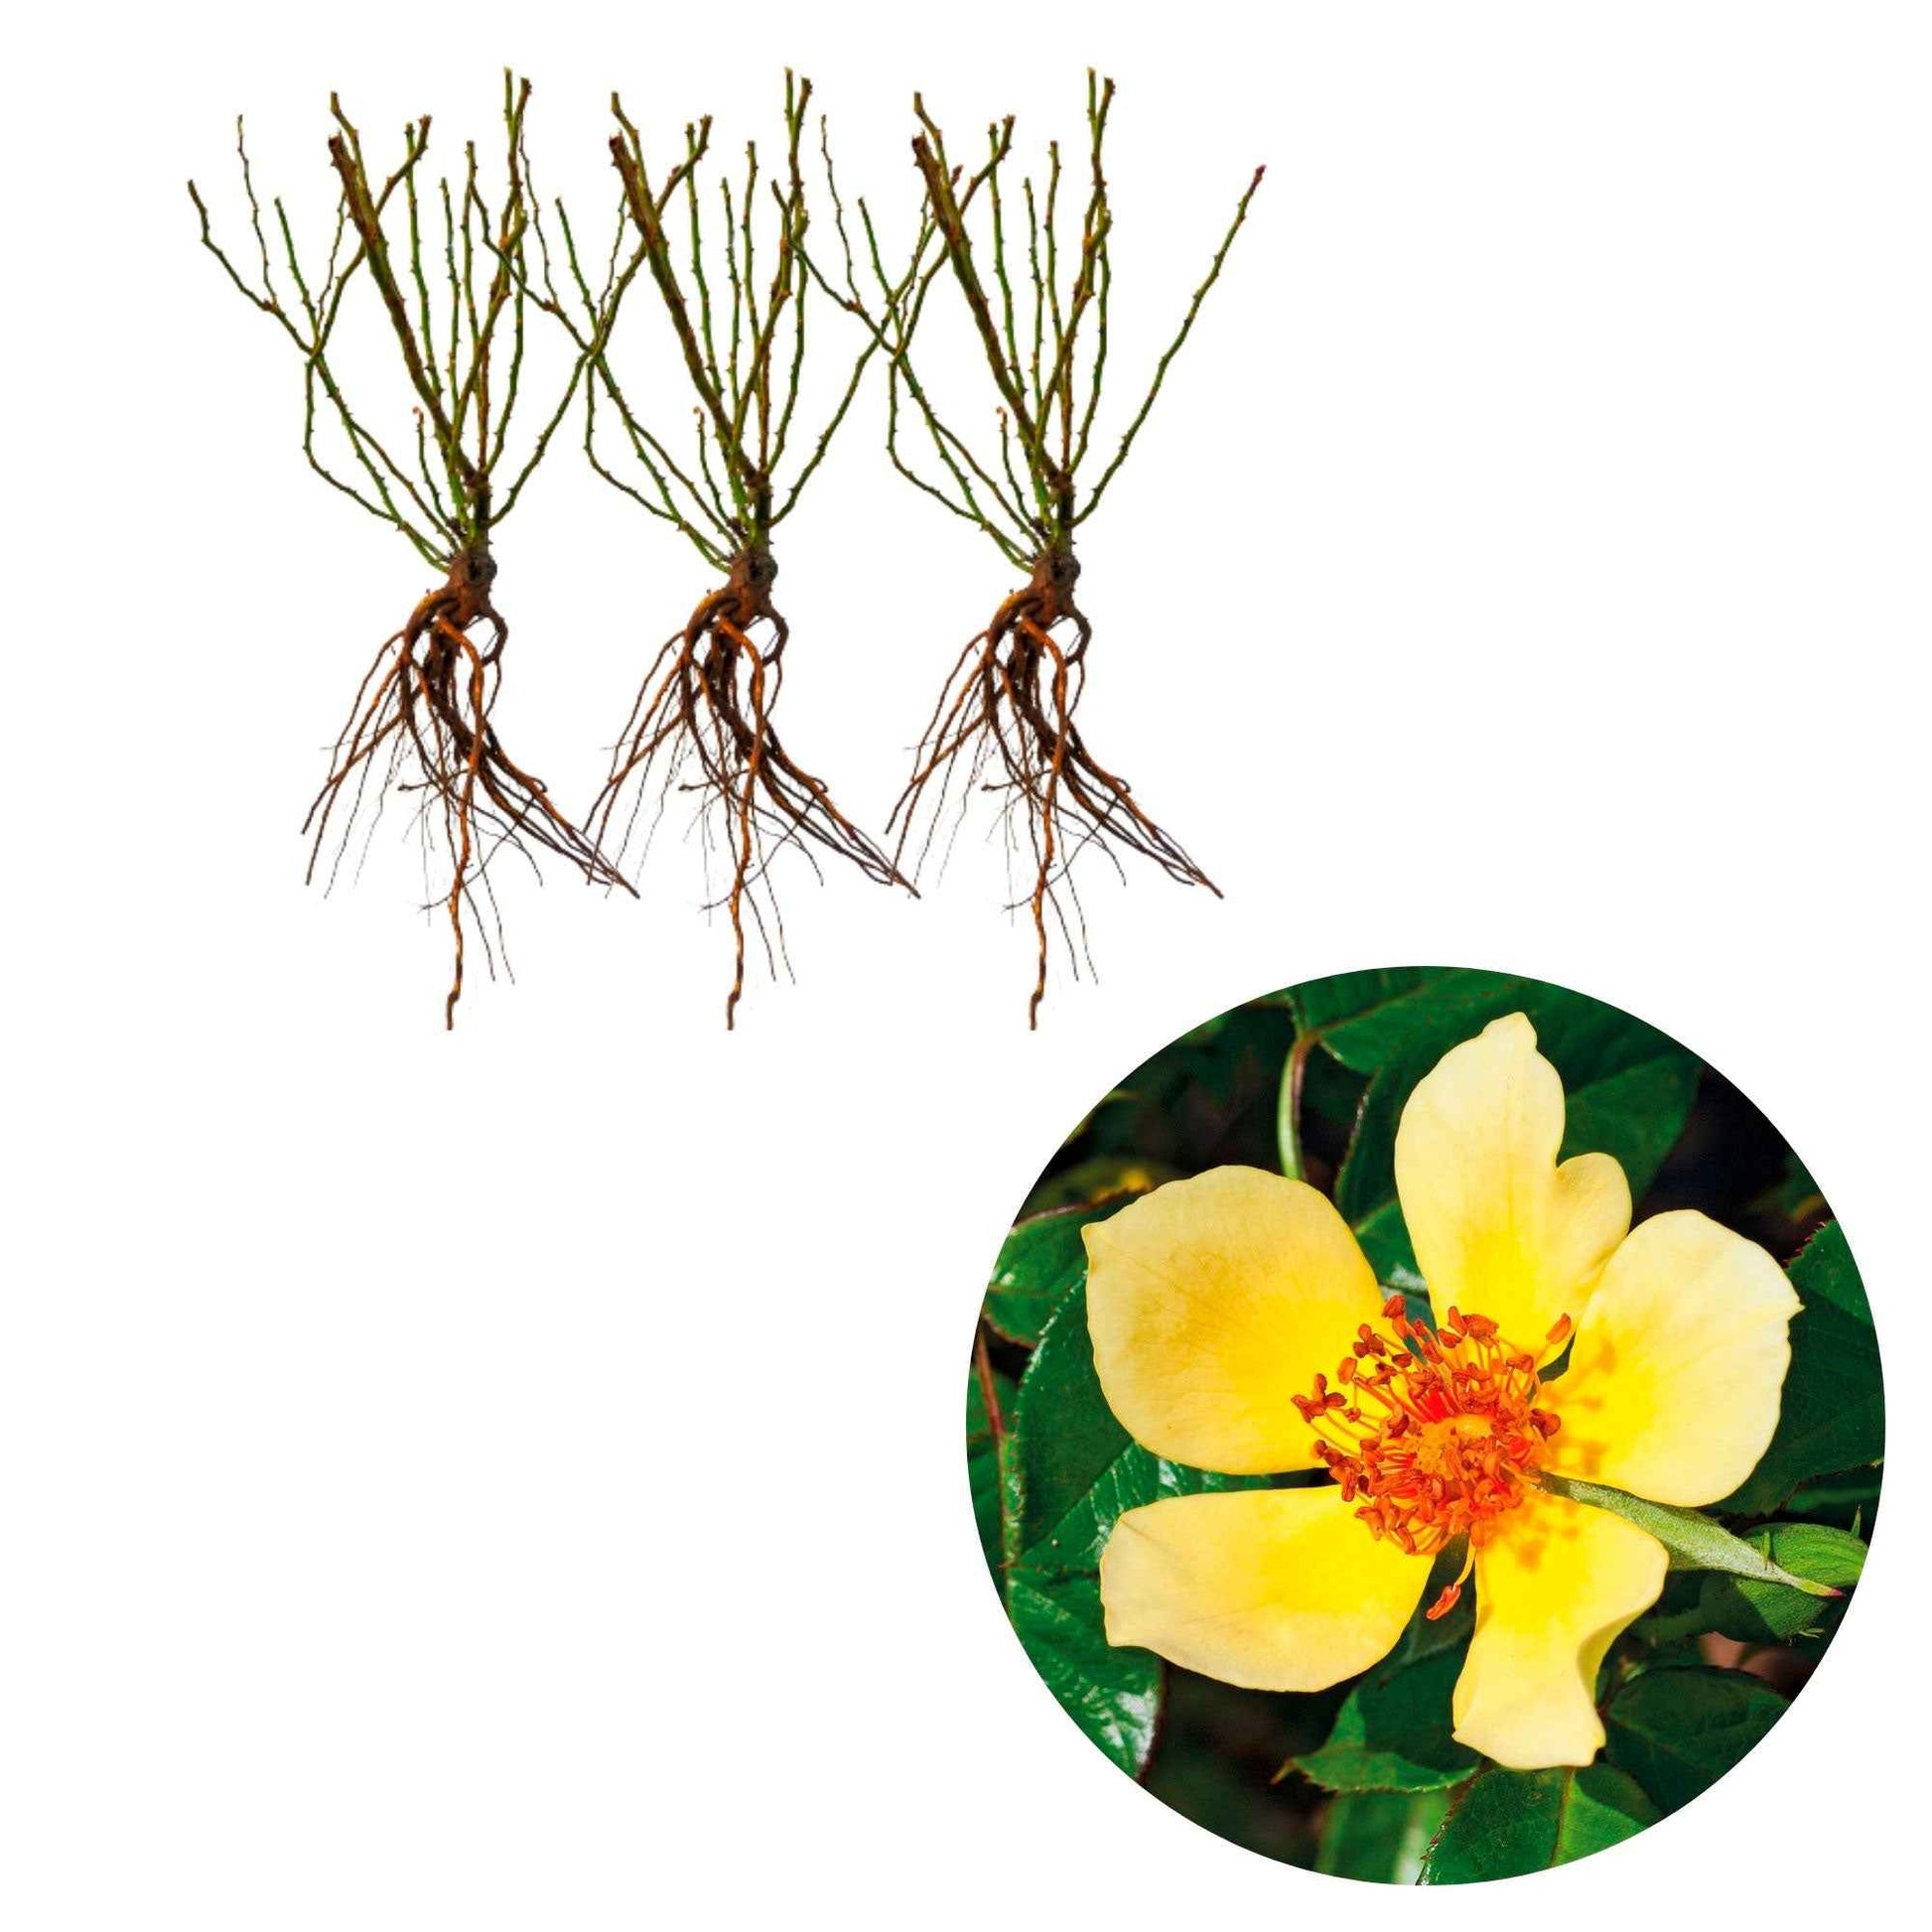 3x Roses Rosa 'Ducat Mella'® Jaune  - Plants à racines nues - Plantes rustiques